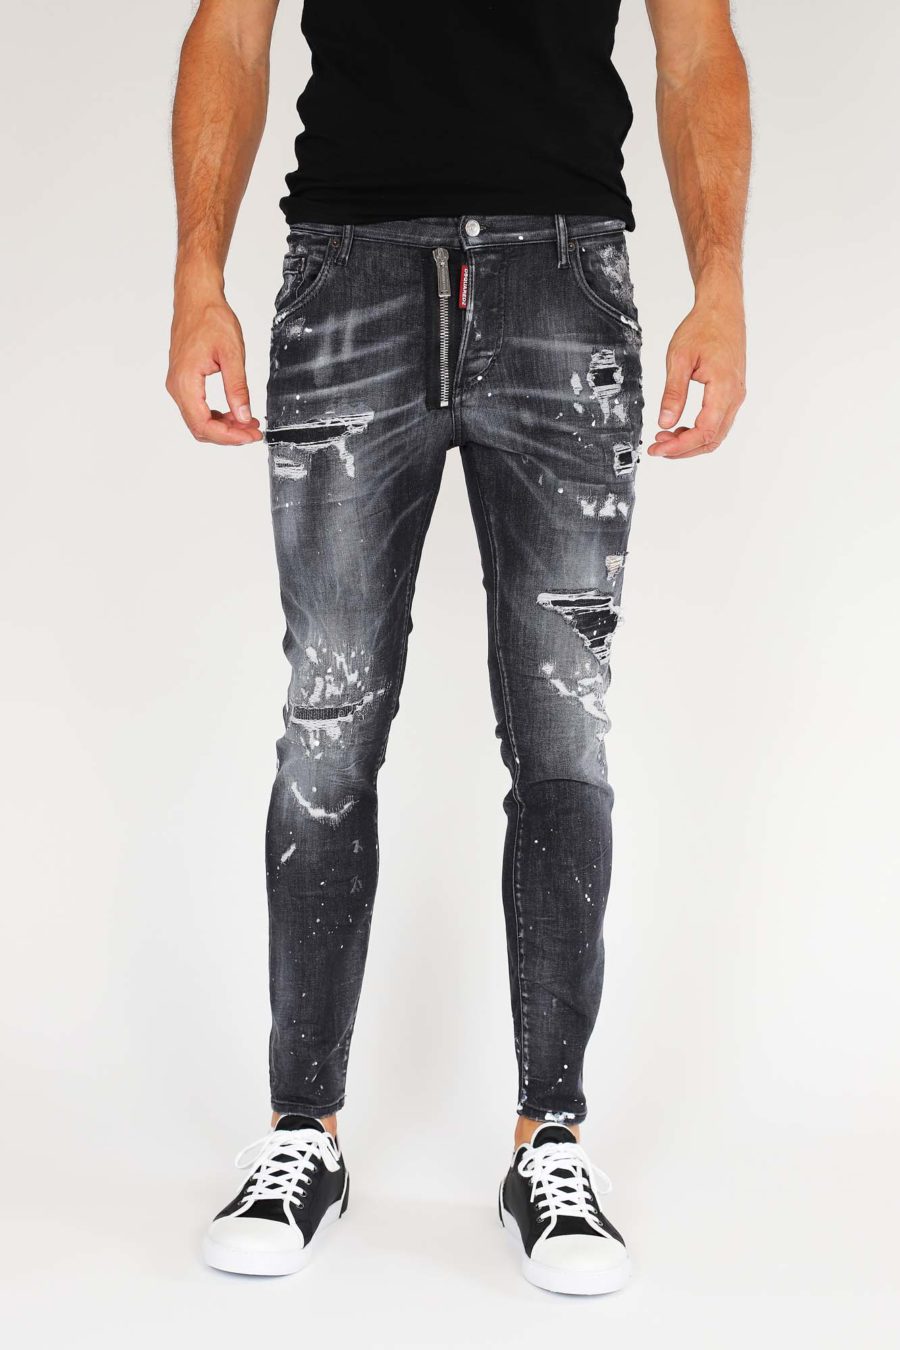 Jeans "Super Twinky Jean" con cremallera - IMG 9857